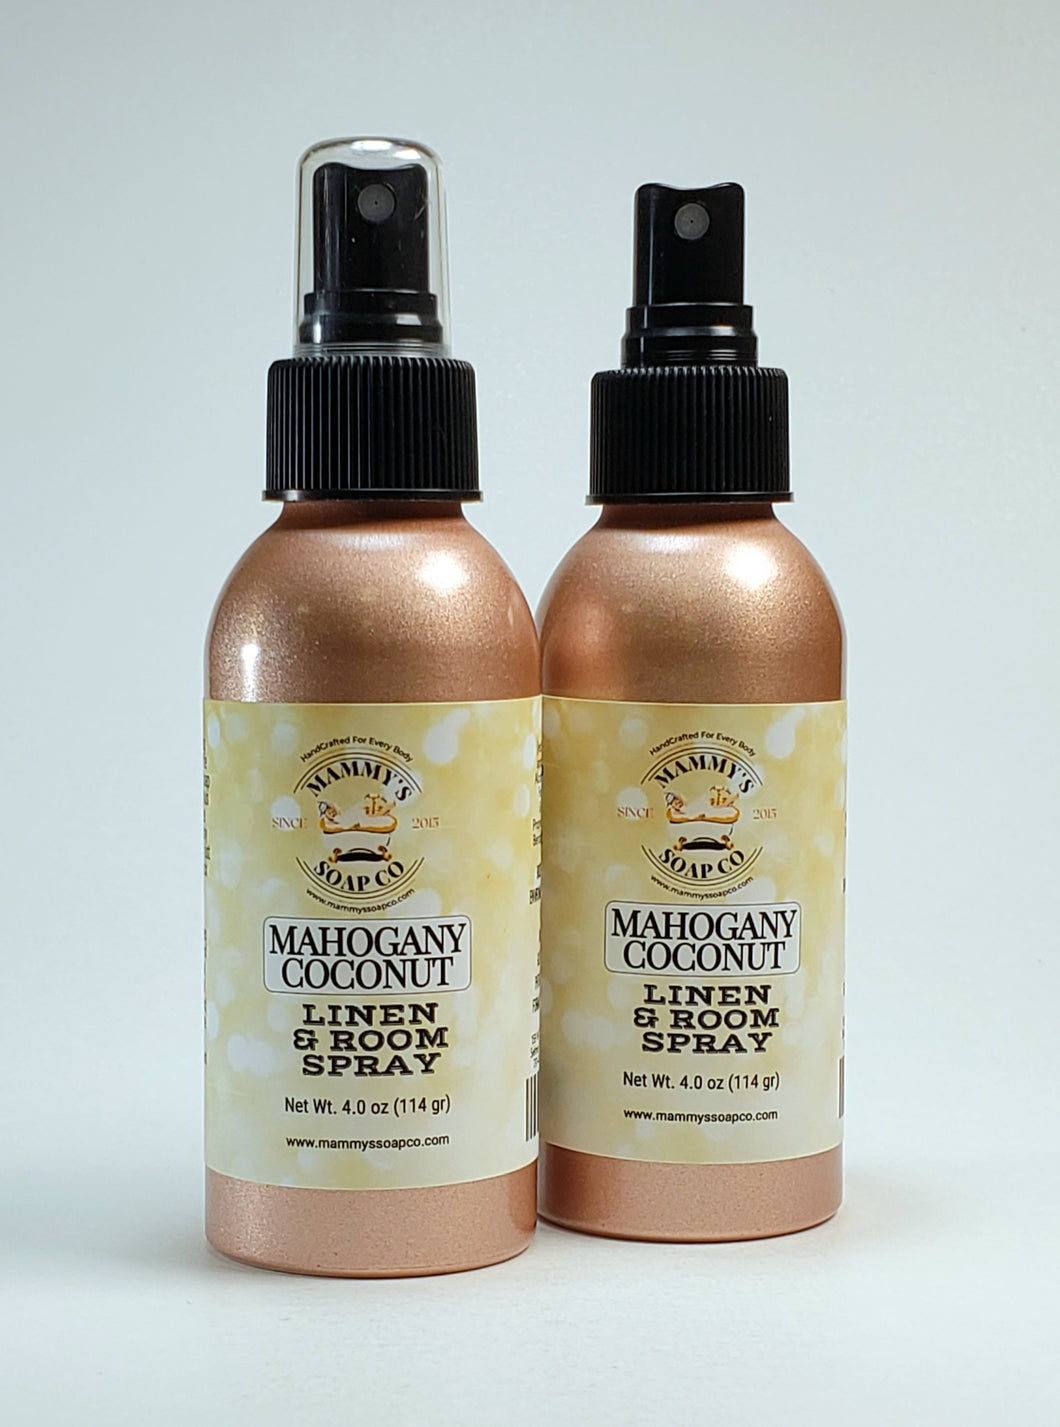 Mahogany Coconut Linen & Room Spray